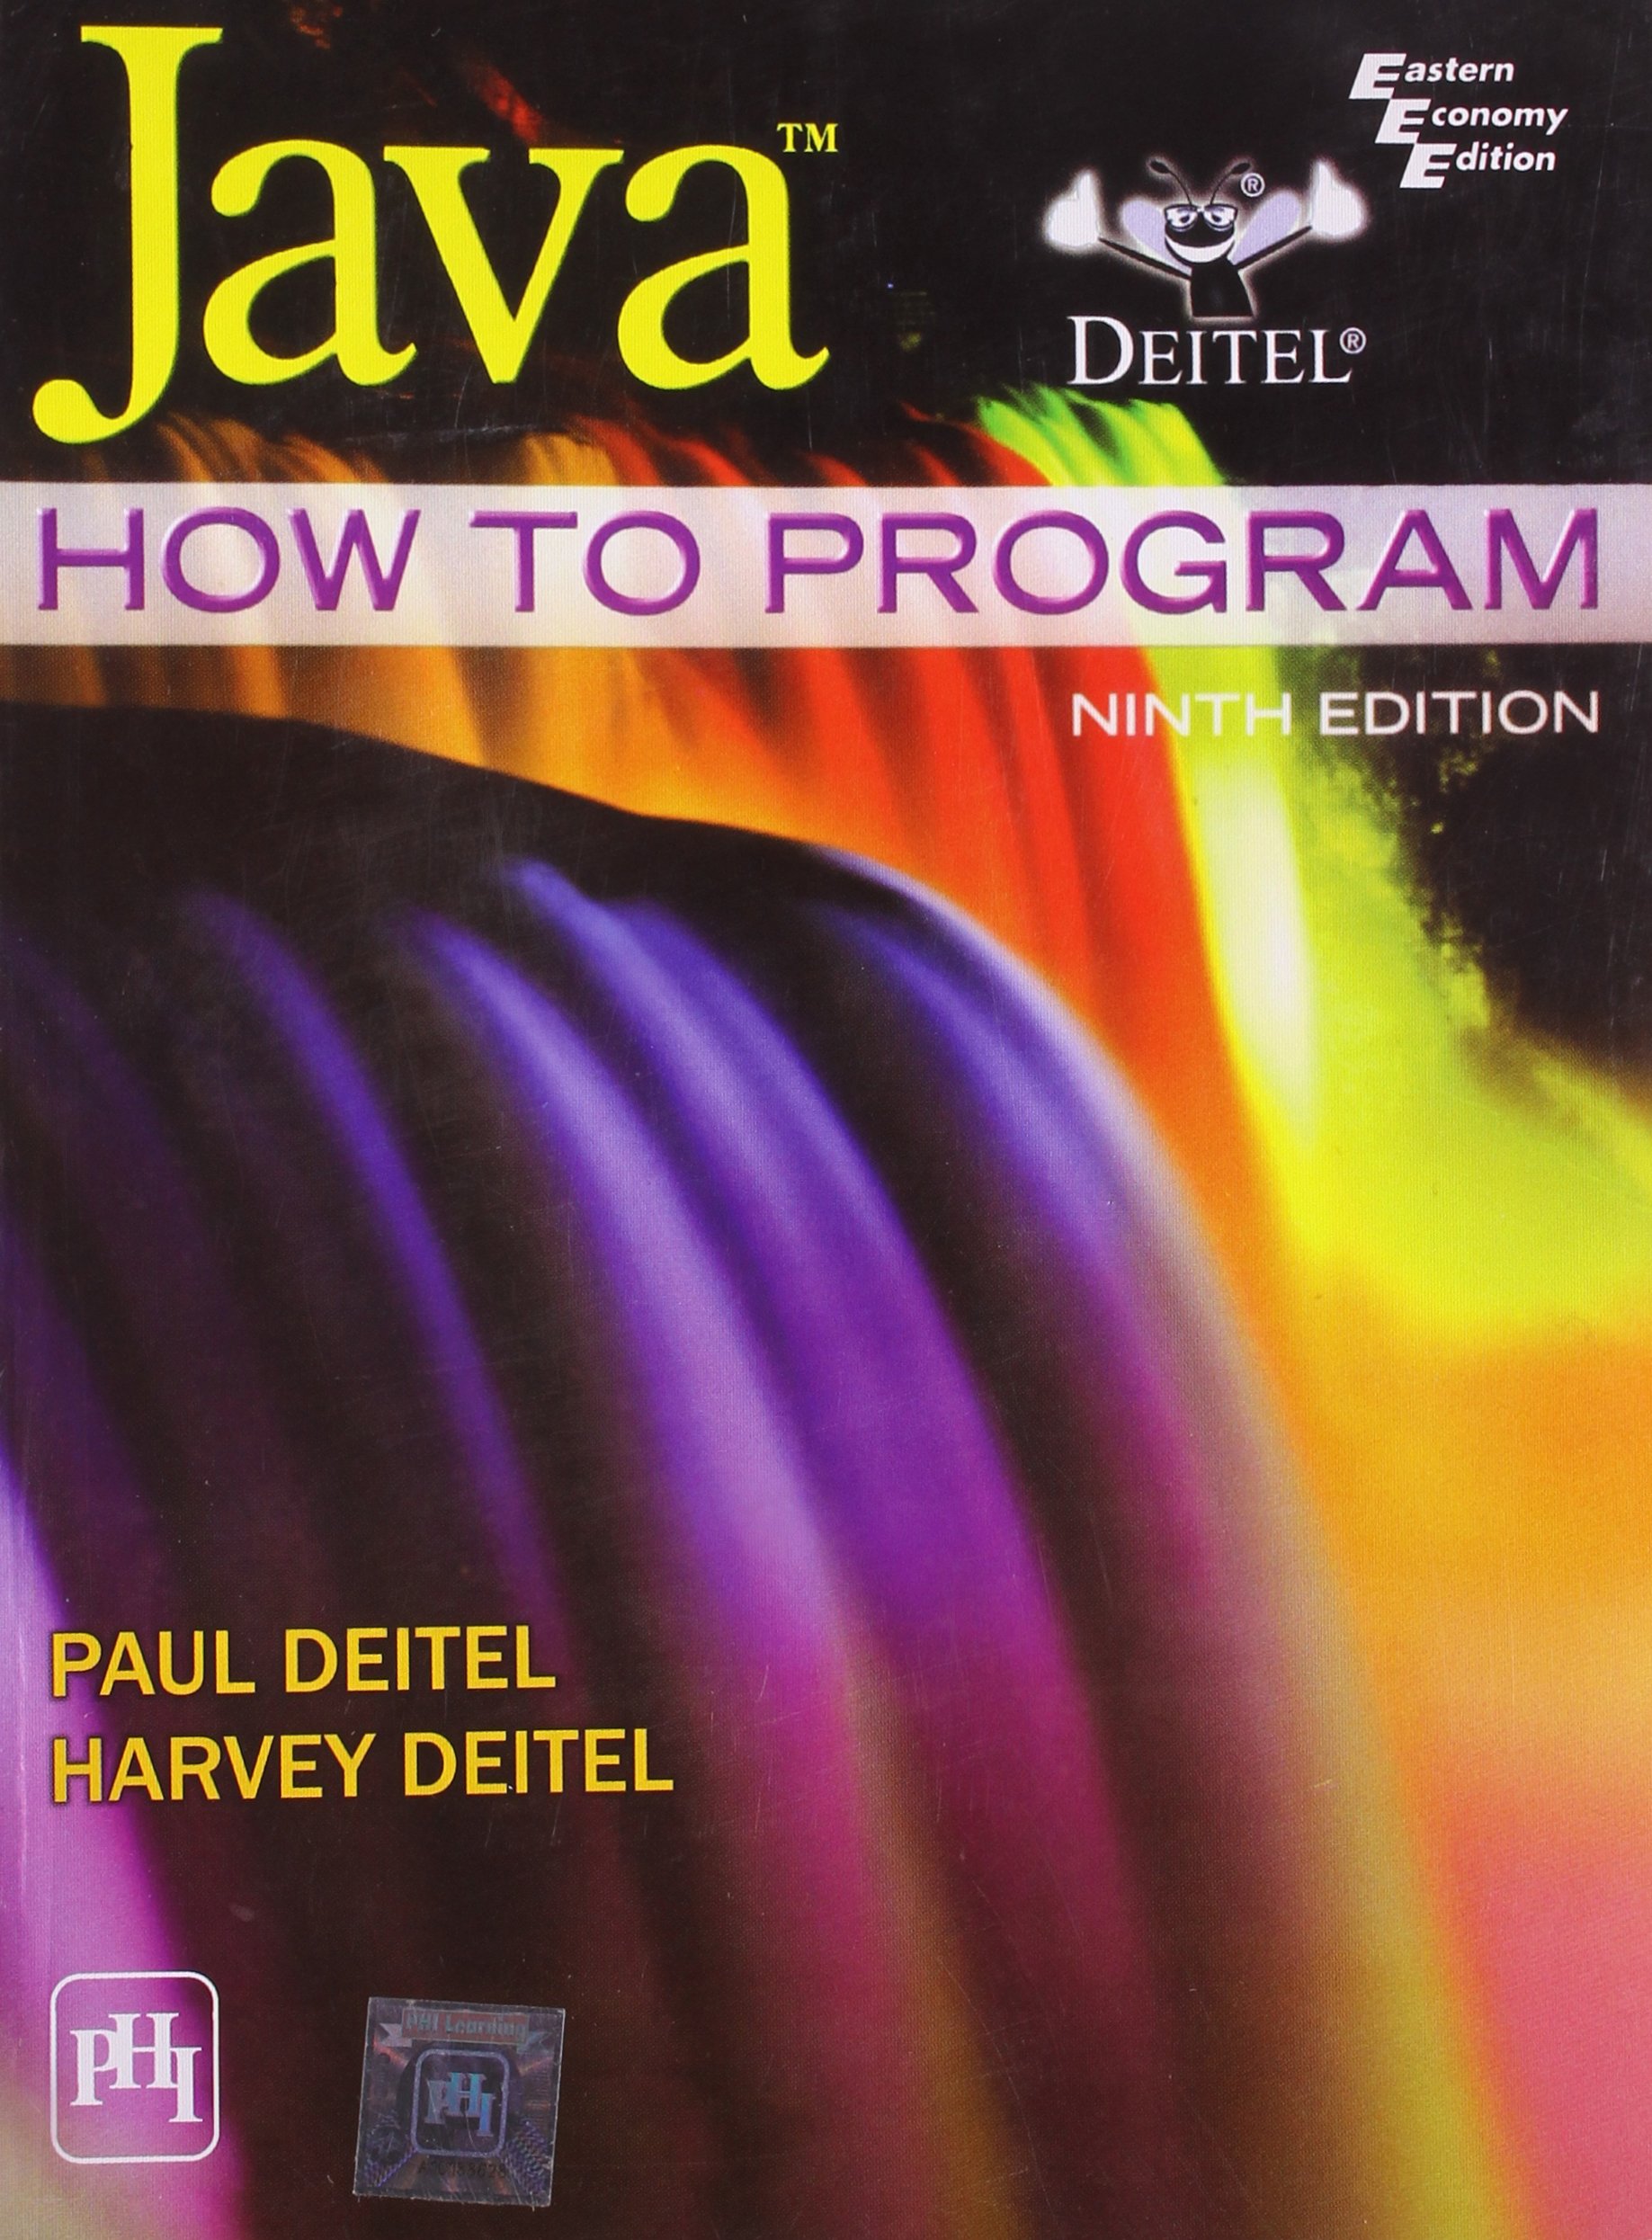 Java How to Program by Deitel & Deitel